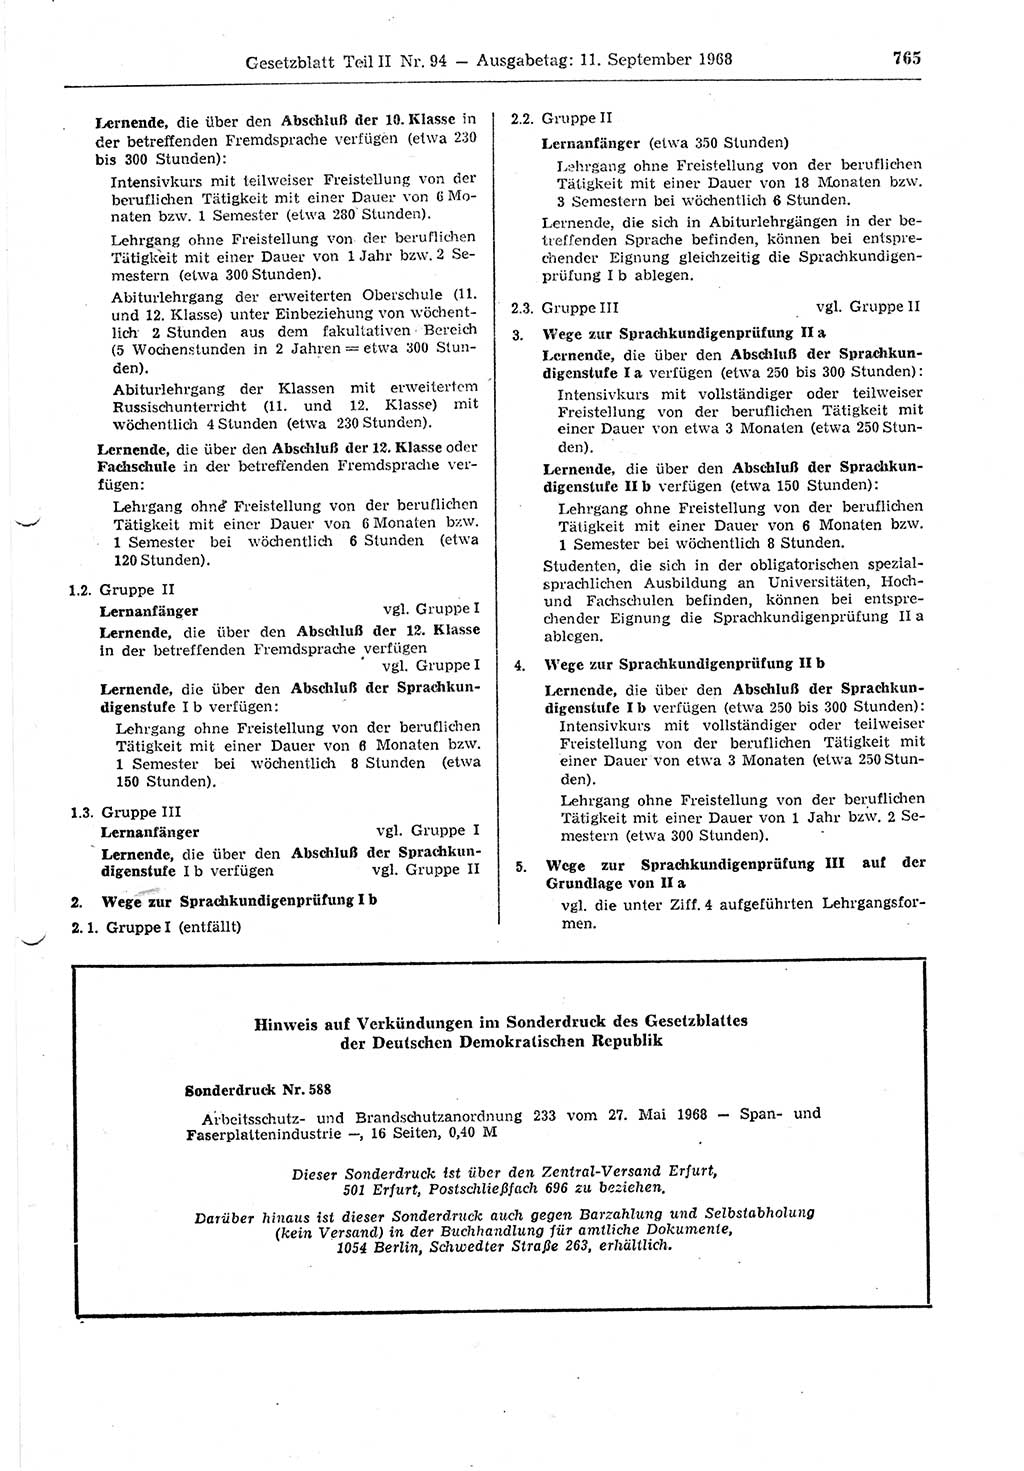 Gesetzblatt (GBl.) der Deutschen Demokratischen Republik (DDR) Teil ⅠⅠ 1968, Seite 765 (GBl. DDR ⅠⅠ 1968, S. 765)